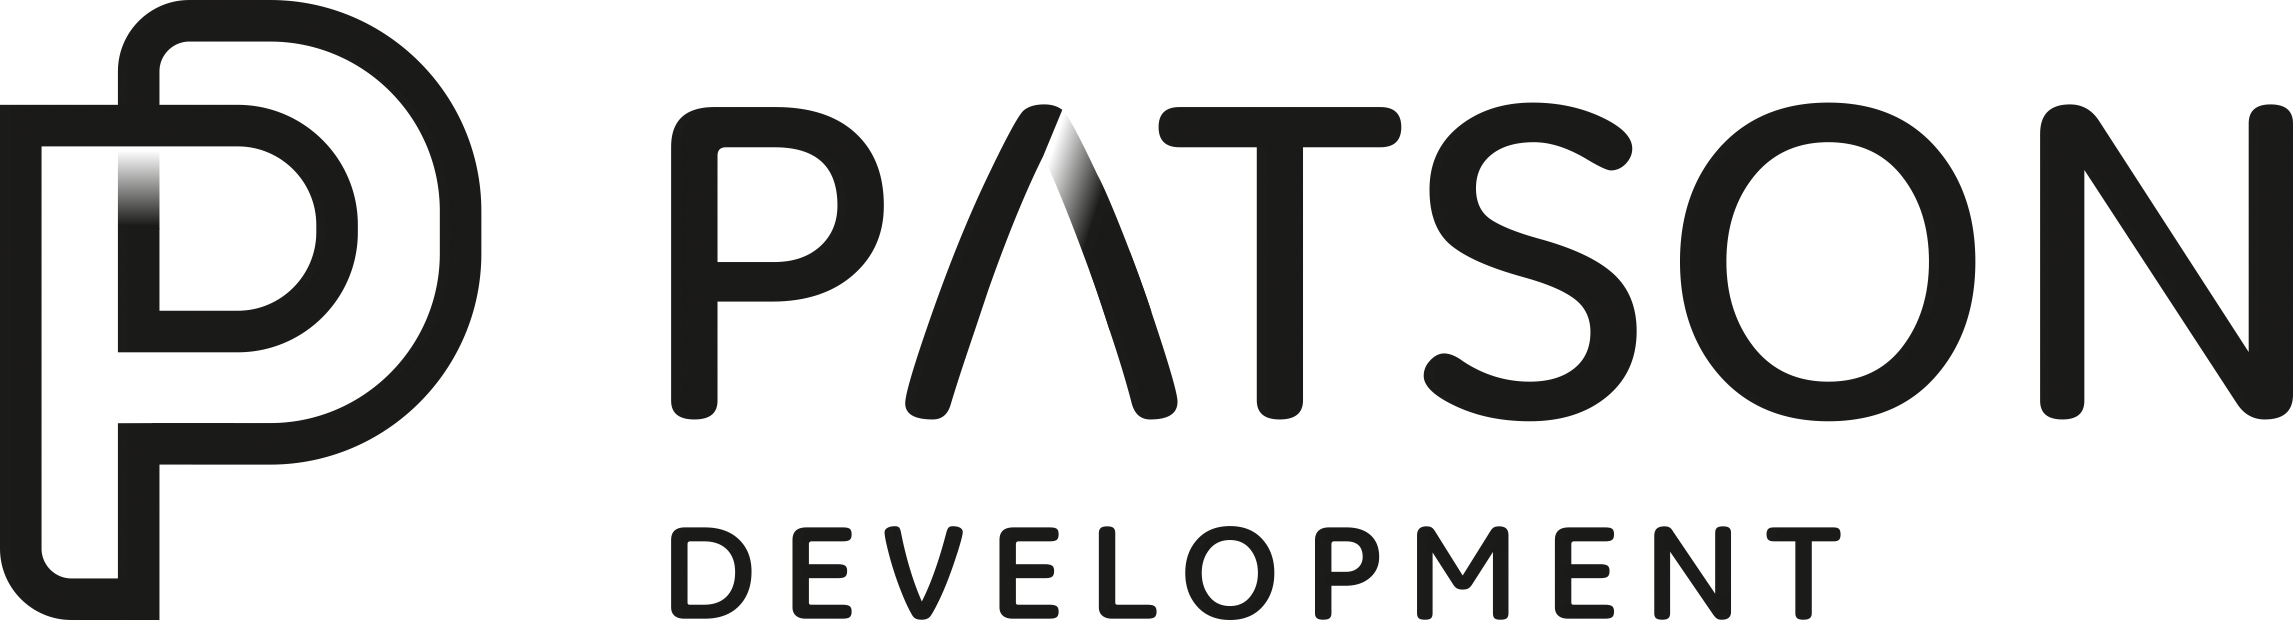 Patson Development